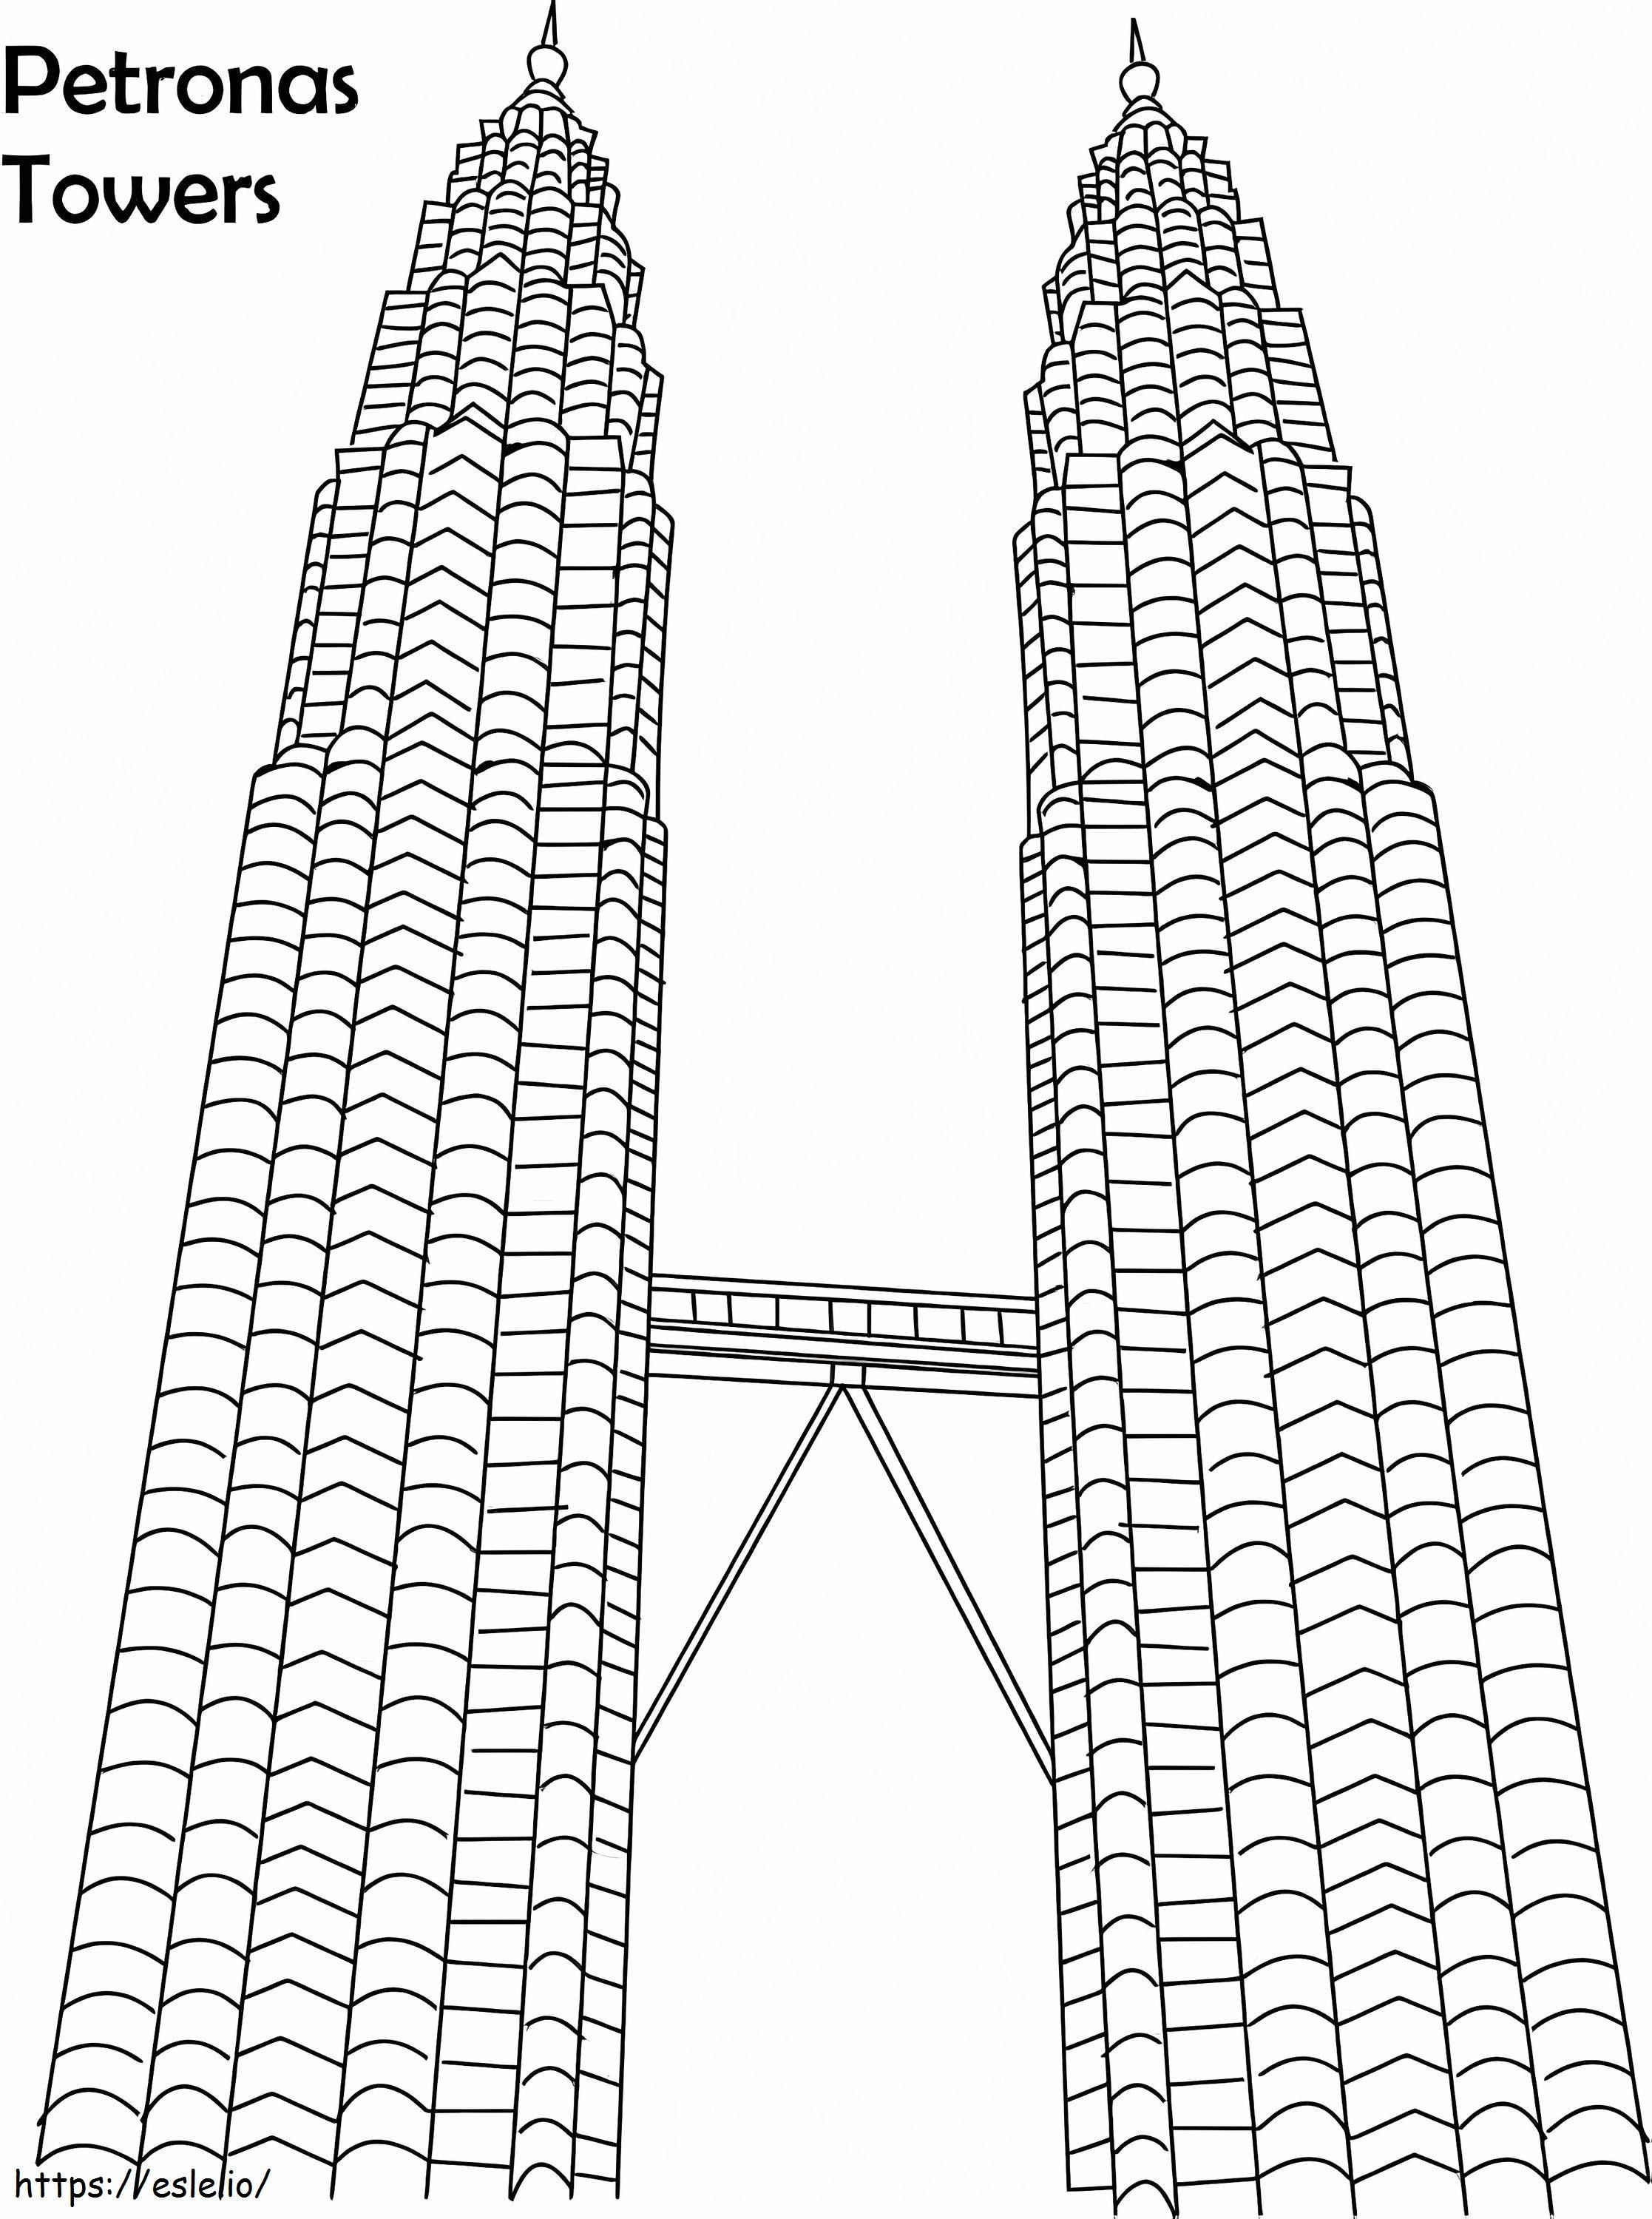 Petronas Twin Towers 1 1 ausmalbilder